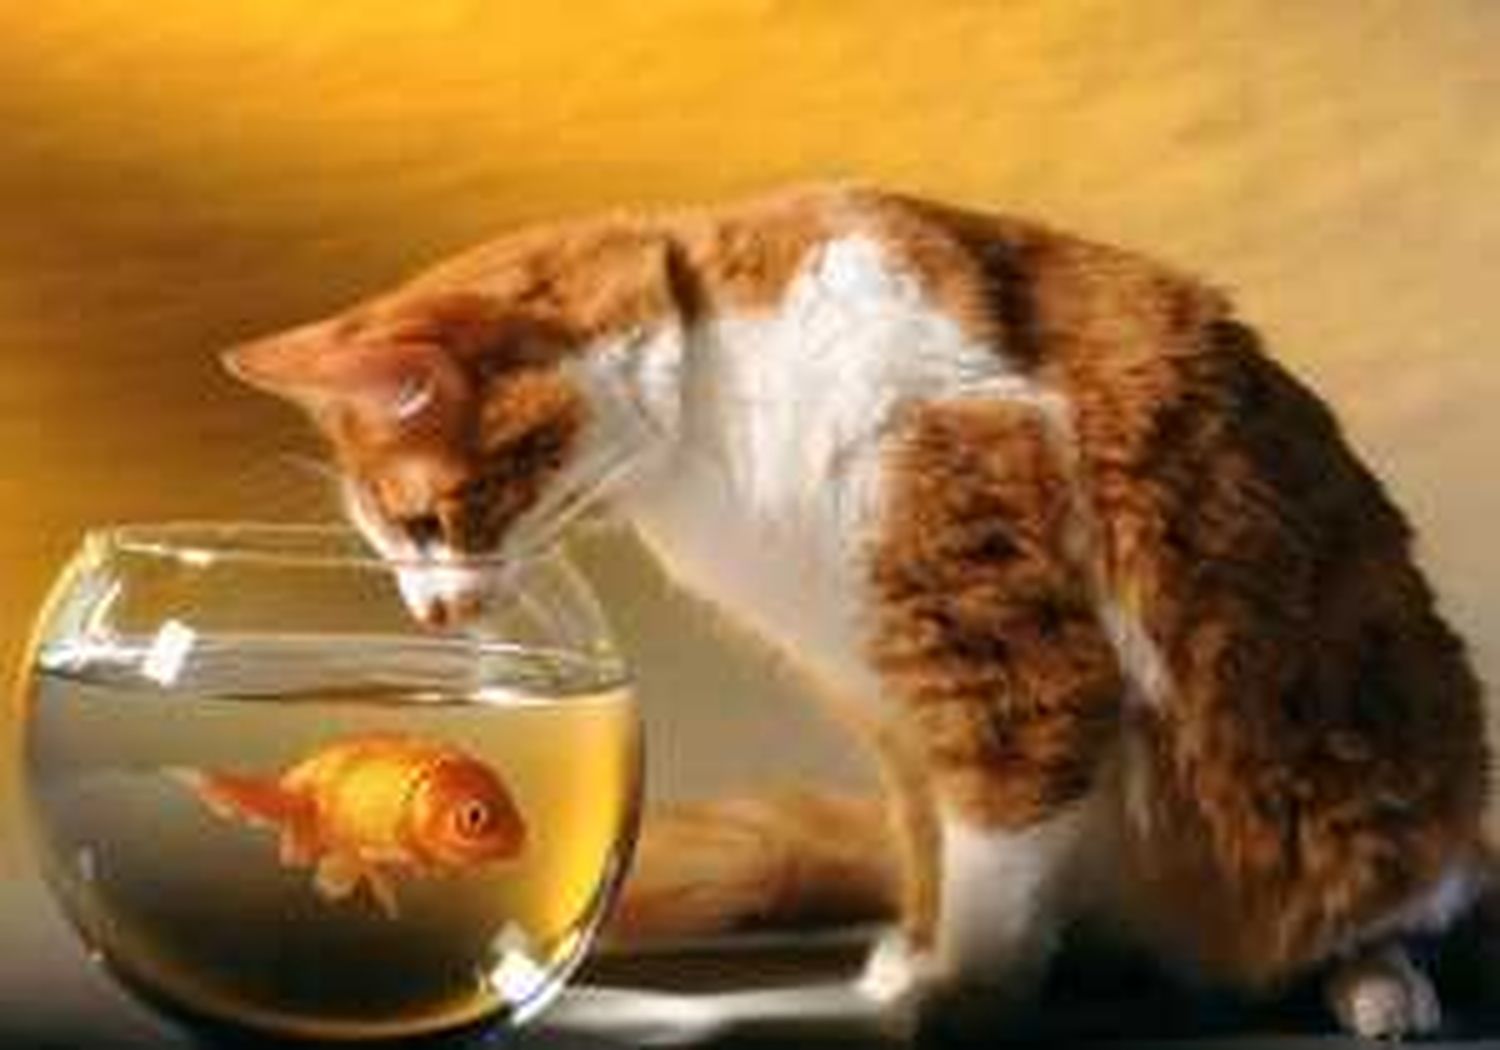 Котик с рыбкой